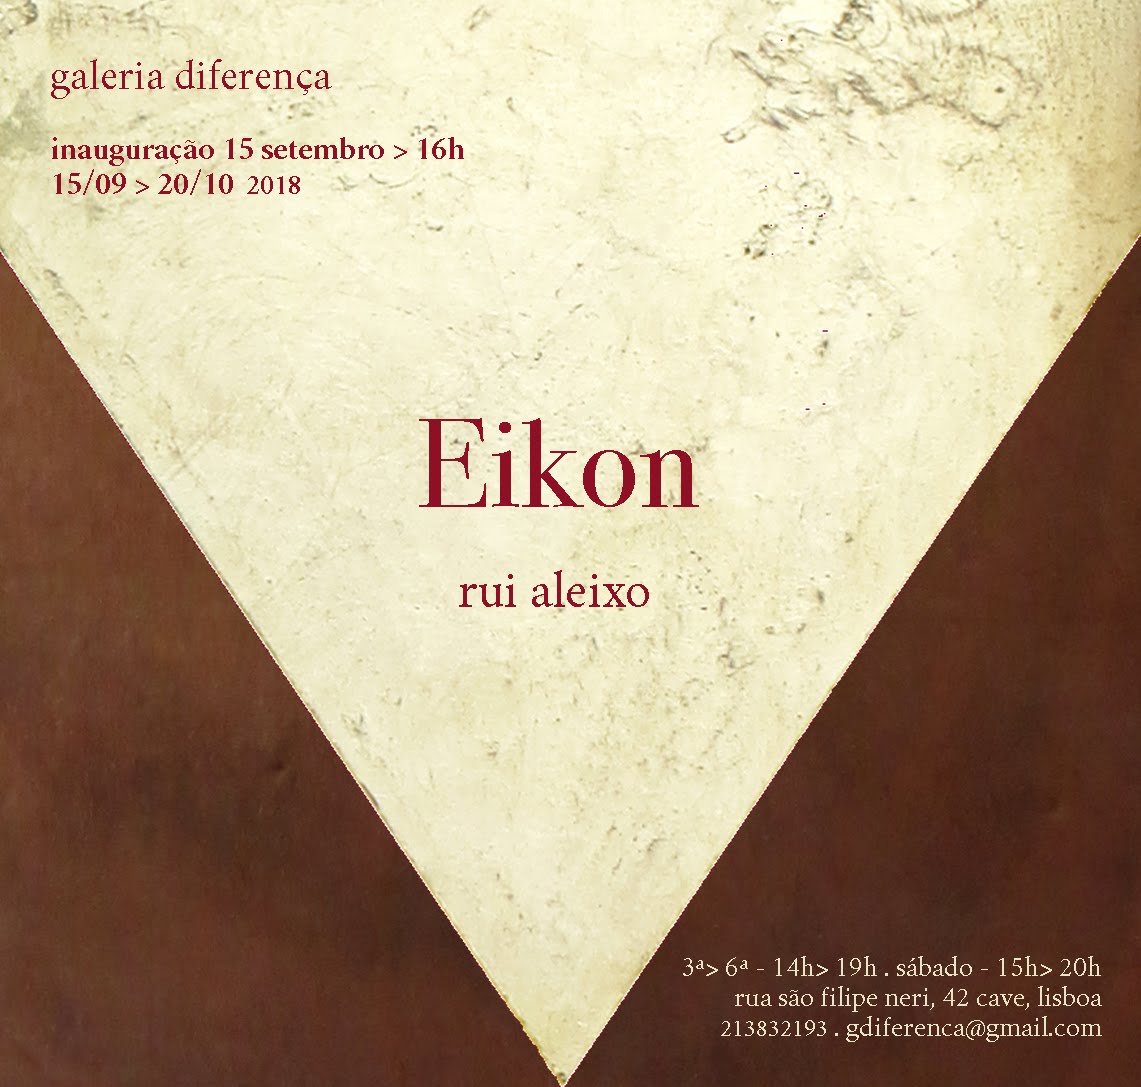 Eikon: exposição na galeria diferença